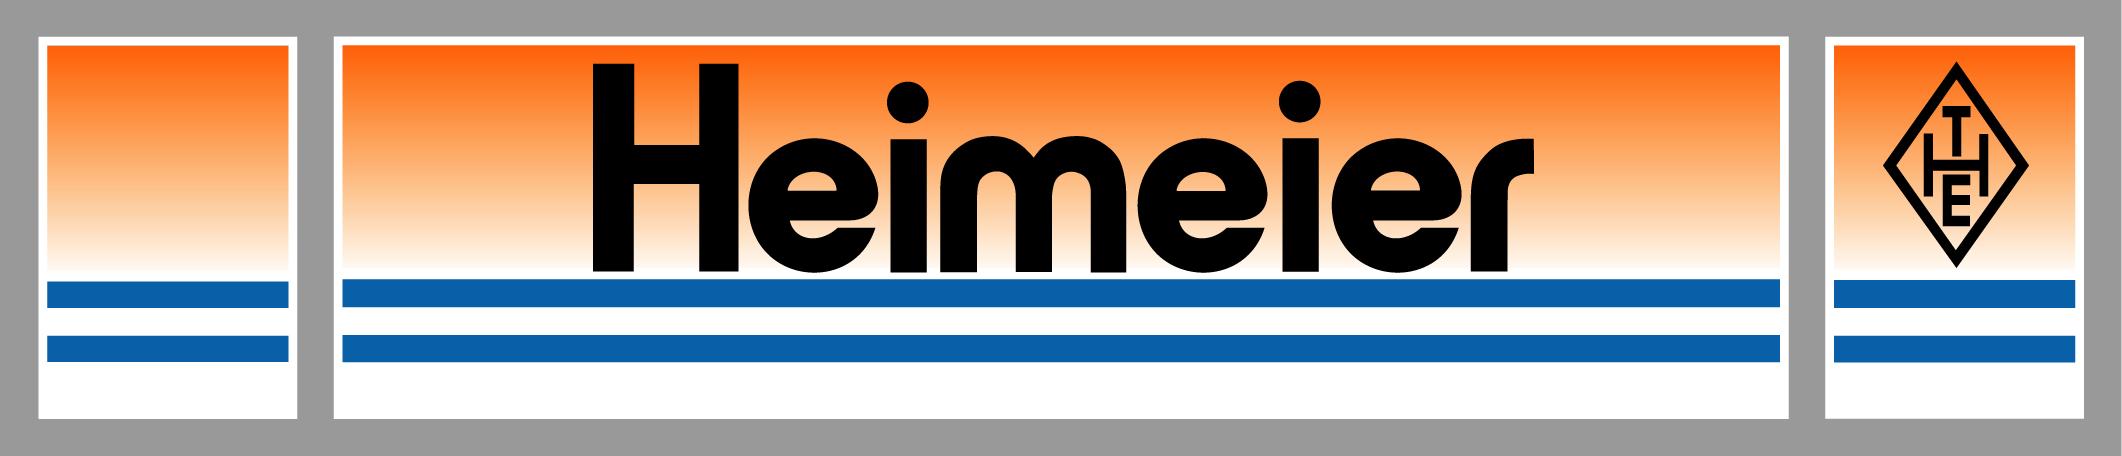 heimeier logo